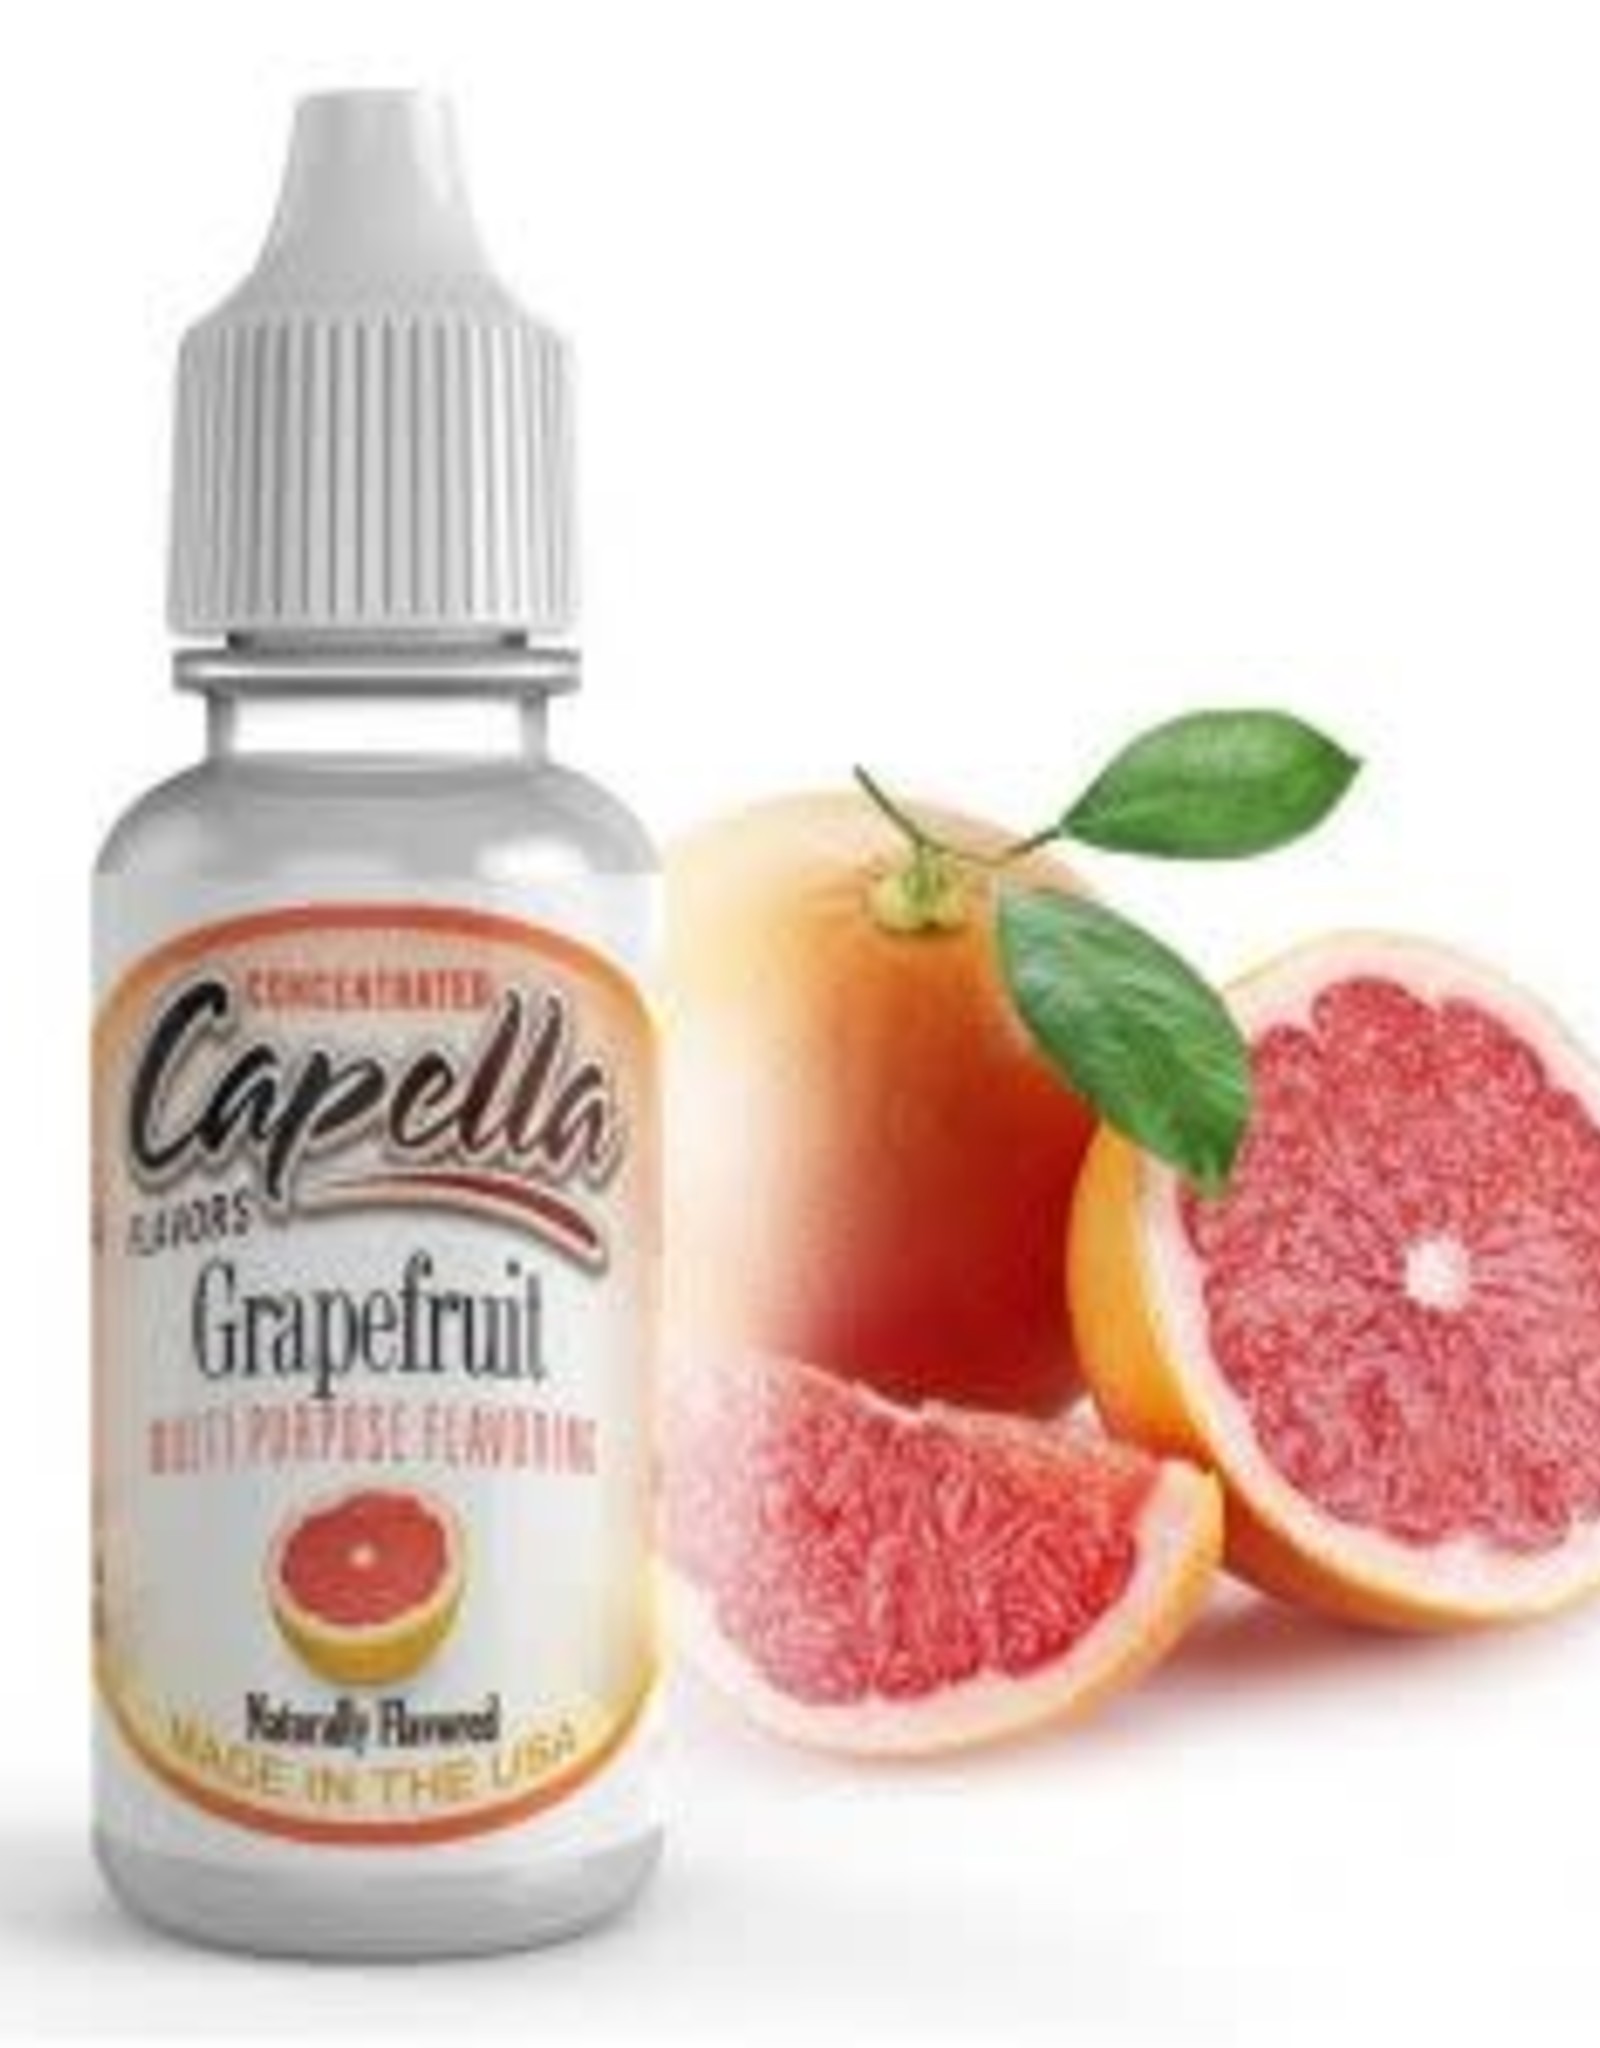 Capella Capella - Grapefruit Aroma 13ml